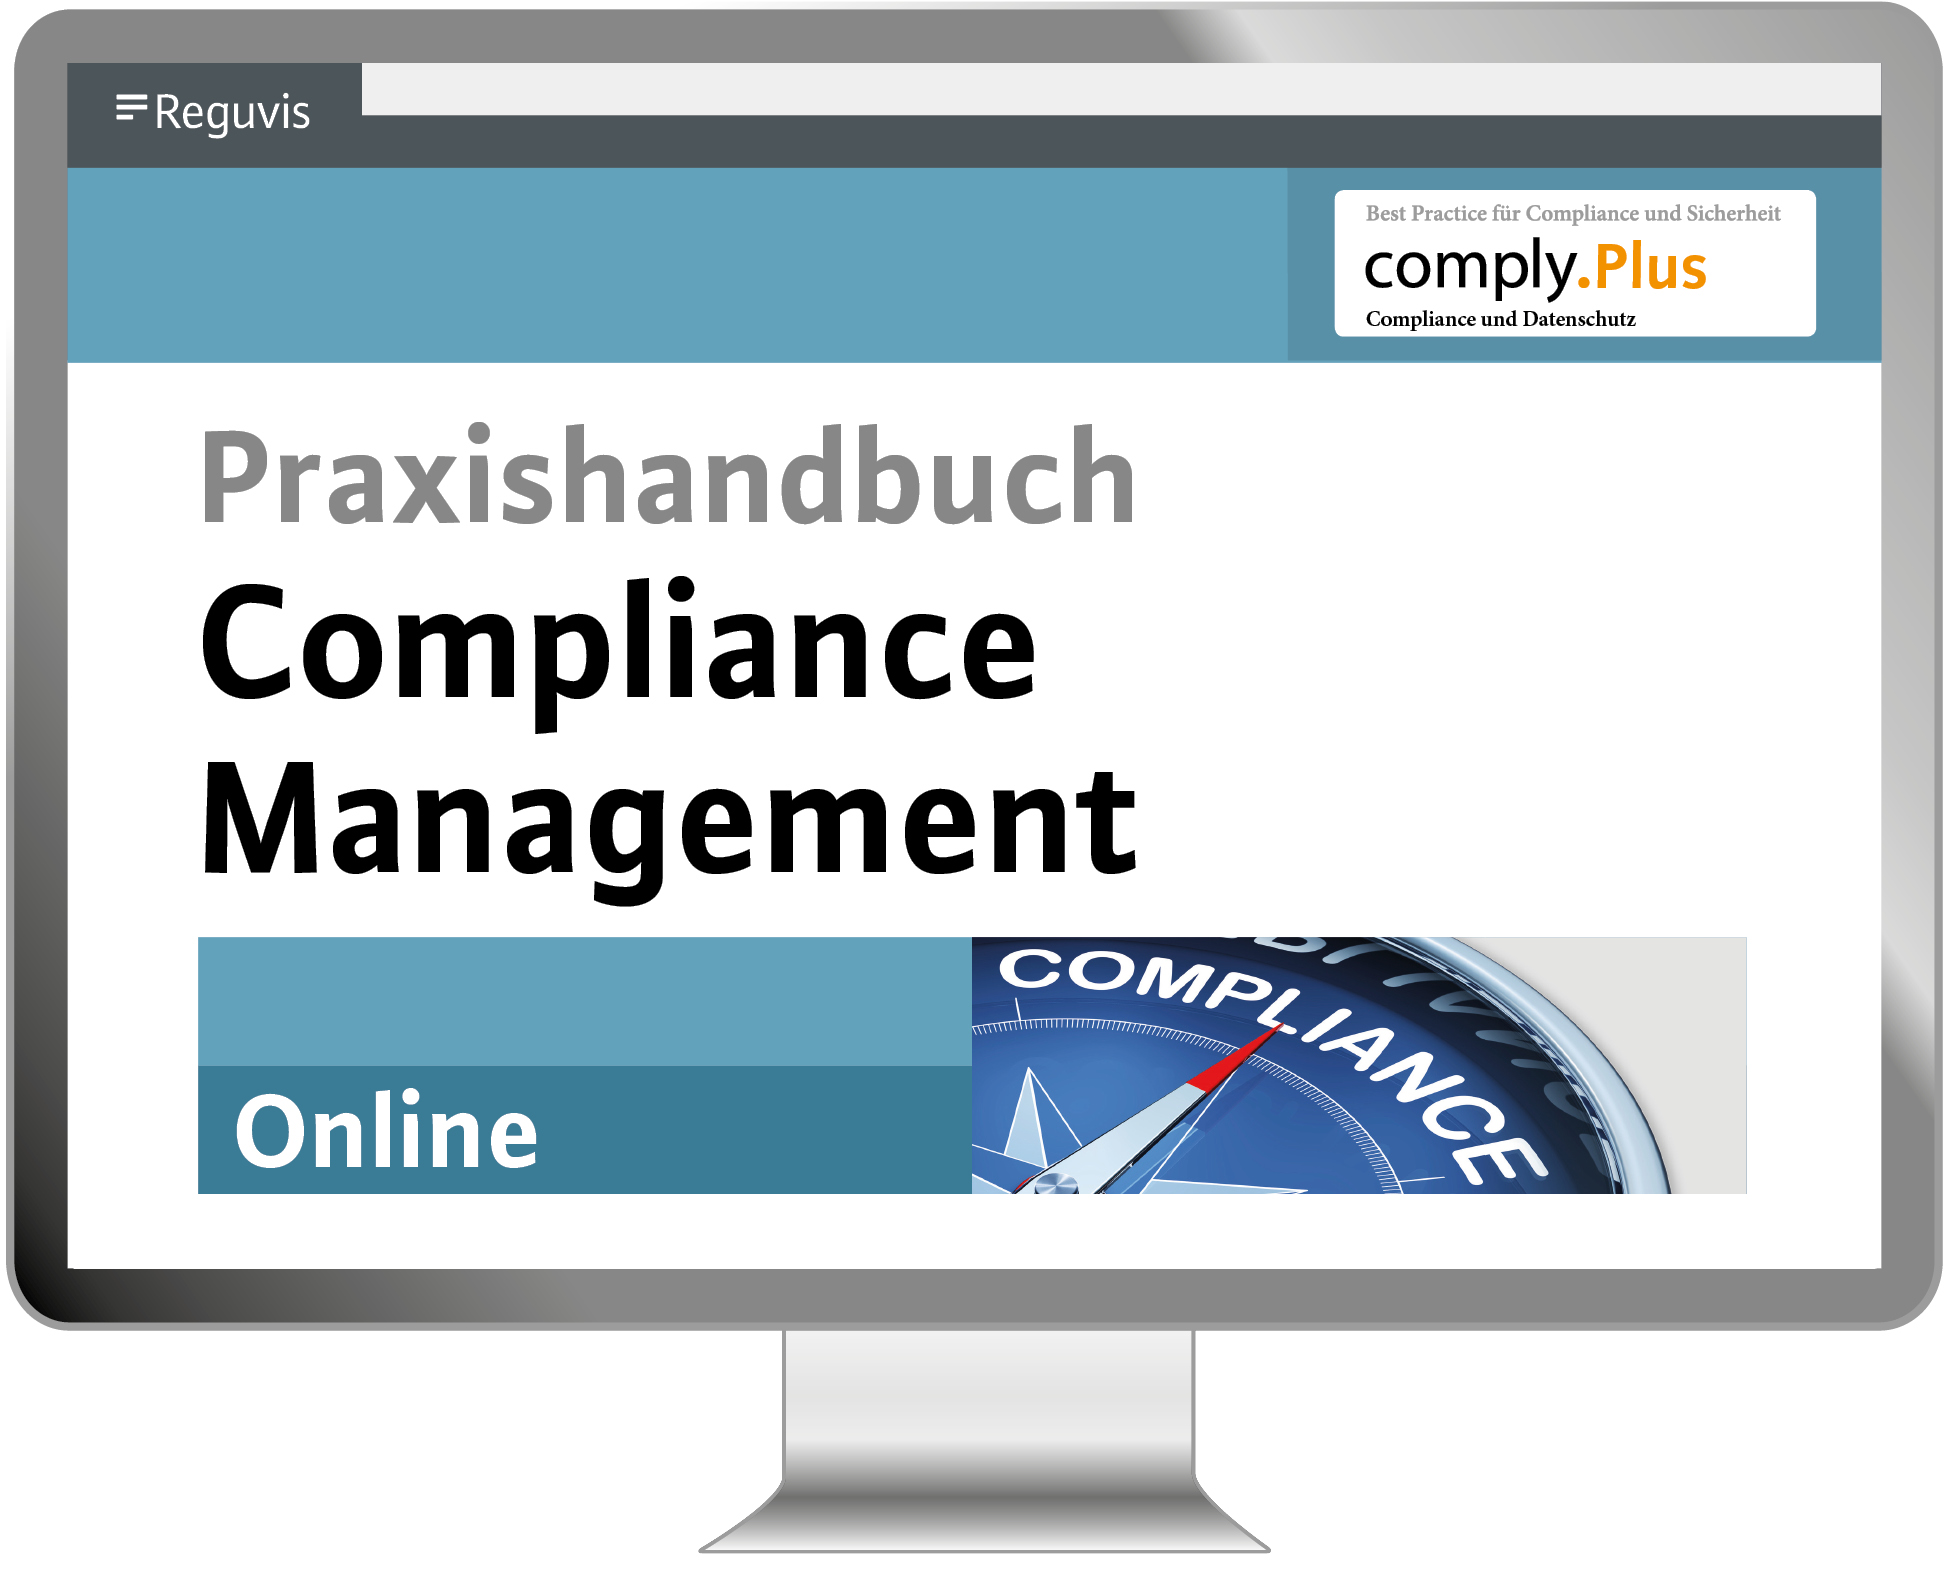 Praxishandbuch Compliance Management Online